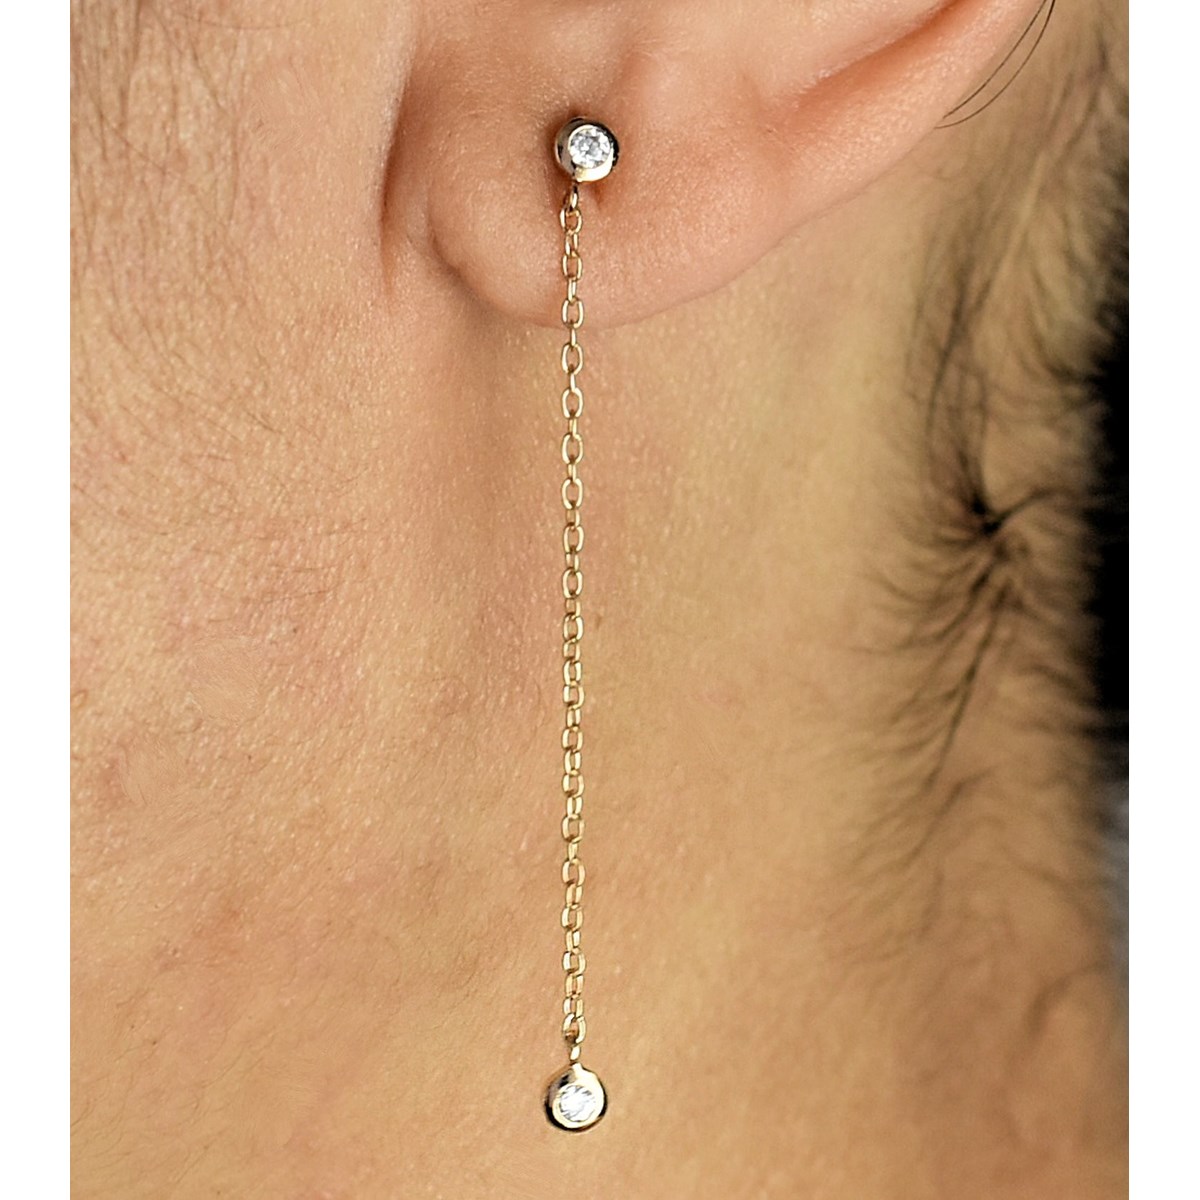 Boucles d'oreilles oxyde de zirconium avec chainette Plaqué or 750 3 microns - vue 3